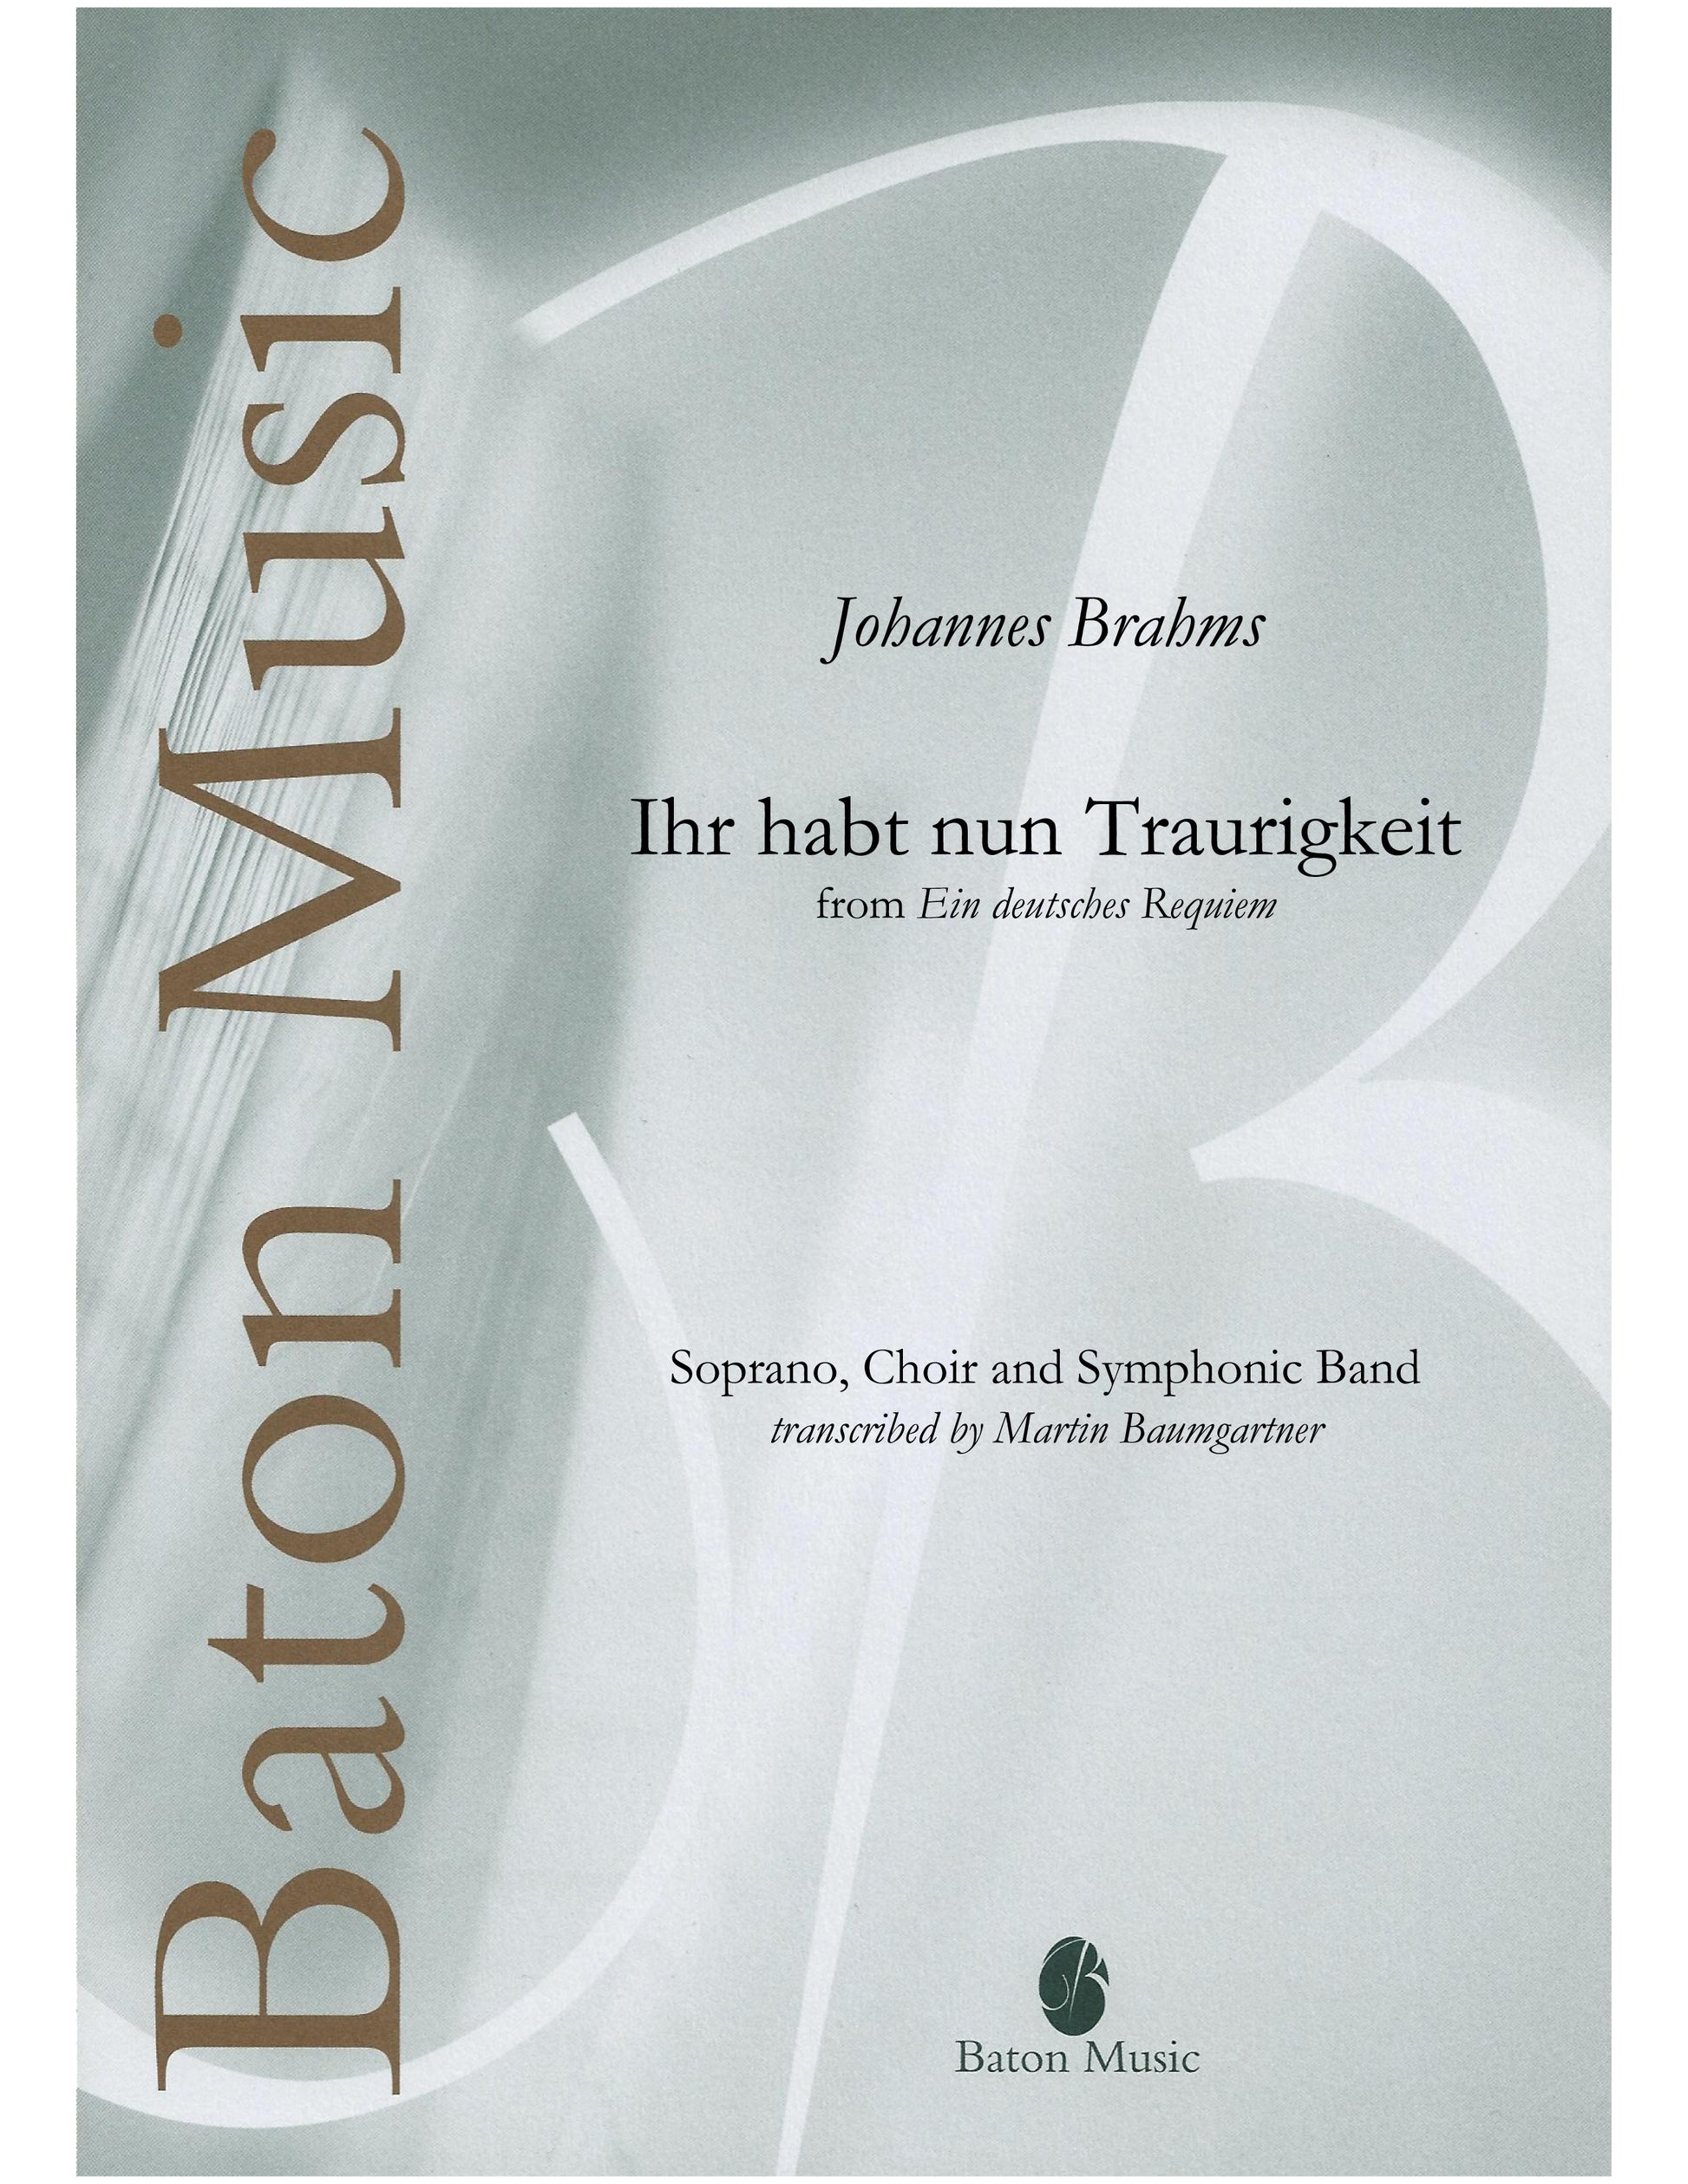 Ihr habt nun Traurigkeit (from German Requiem) - Johannes Brahms